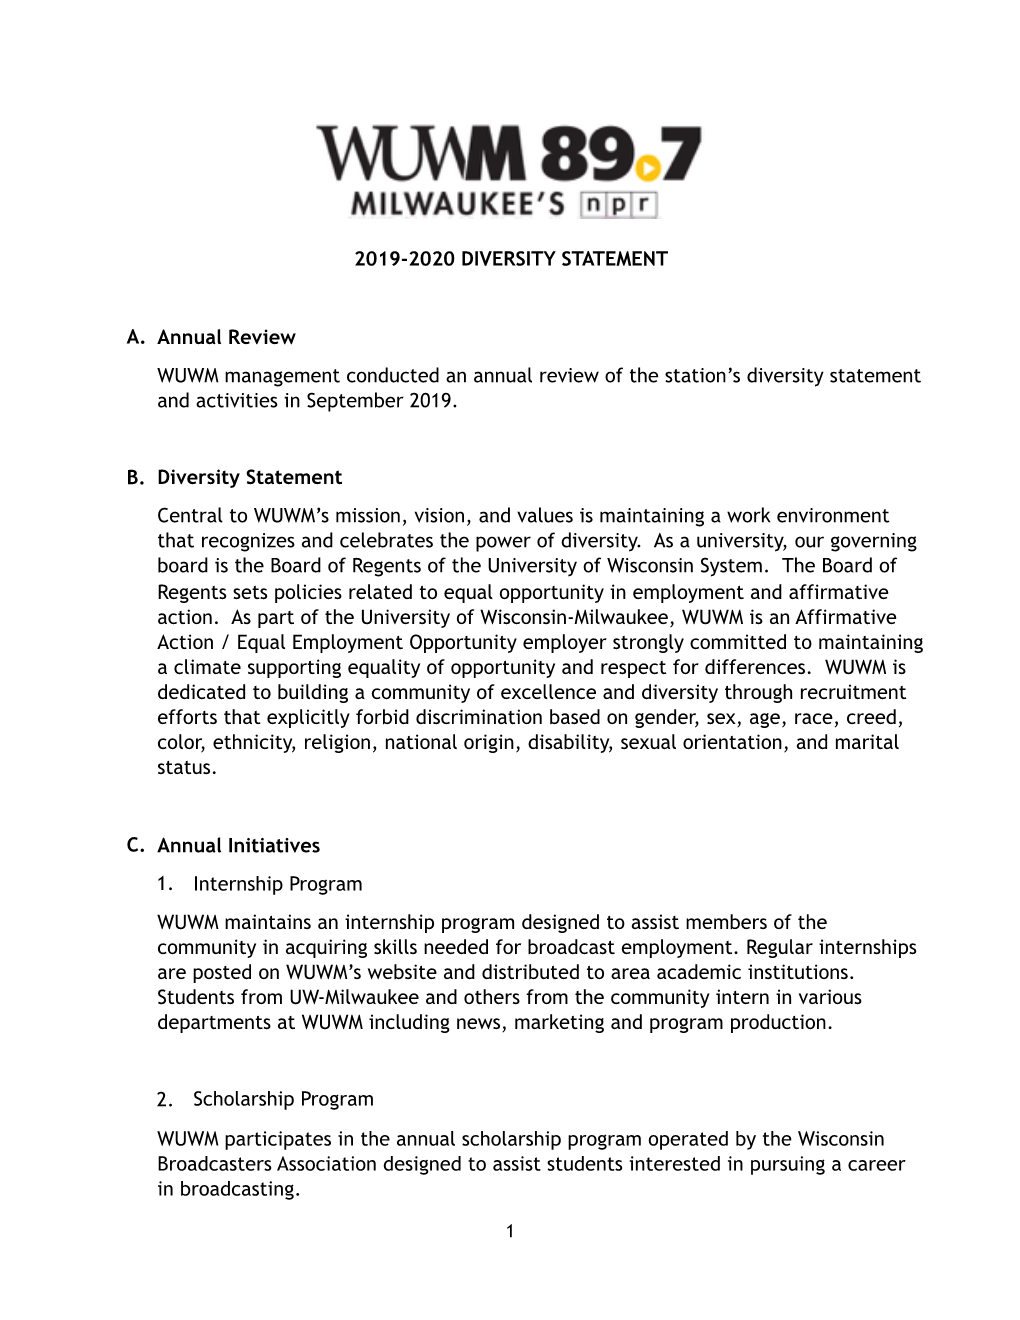 WUWM Diversity Statement 2019-09 2